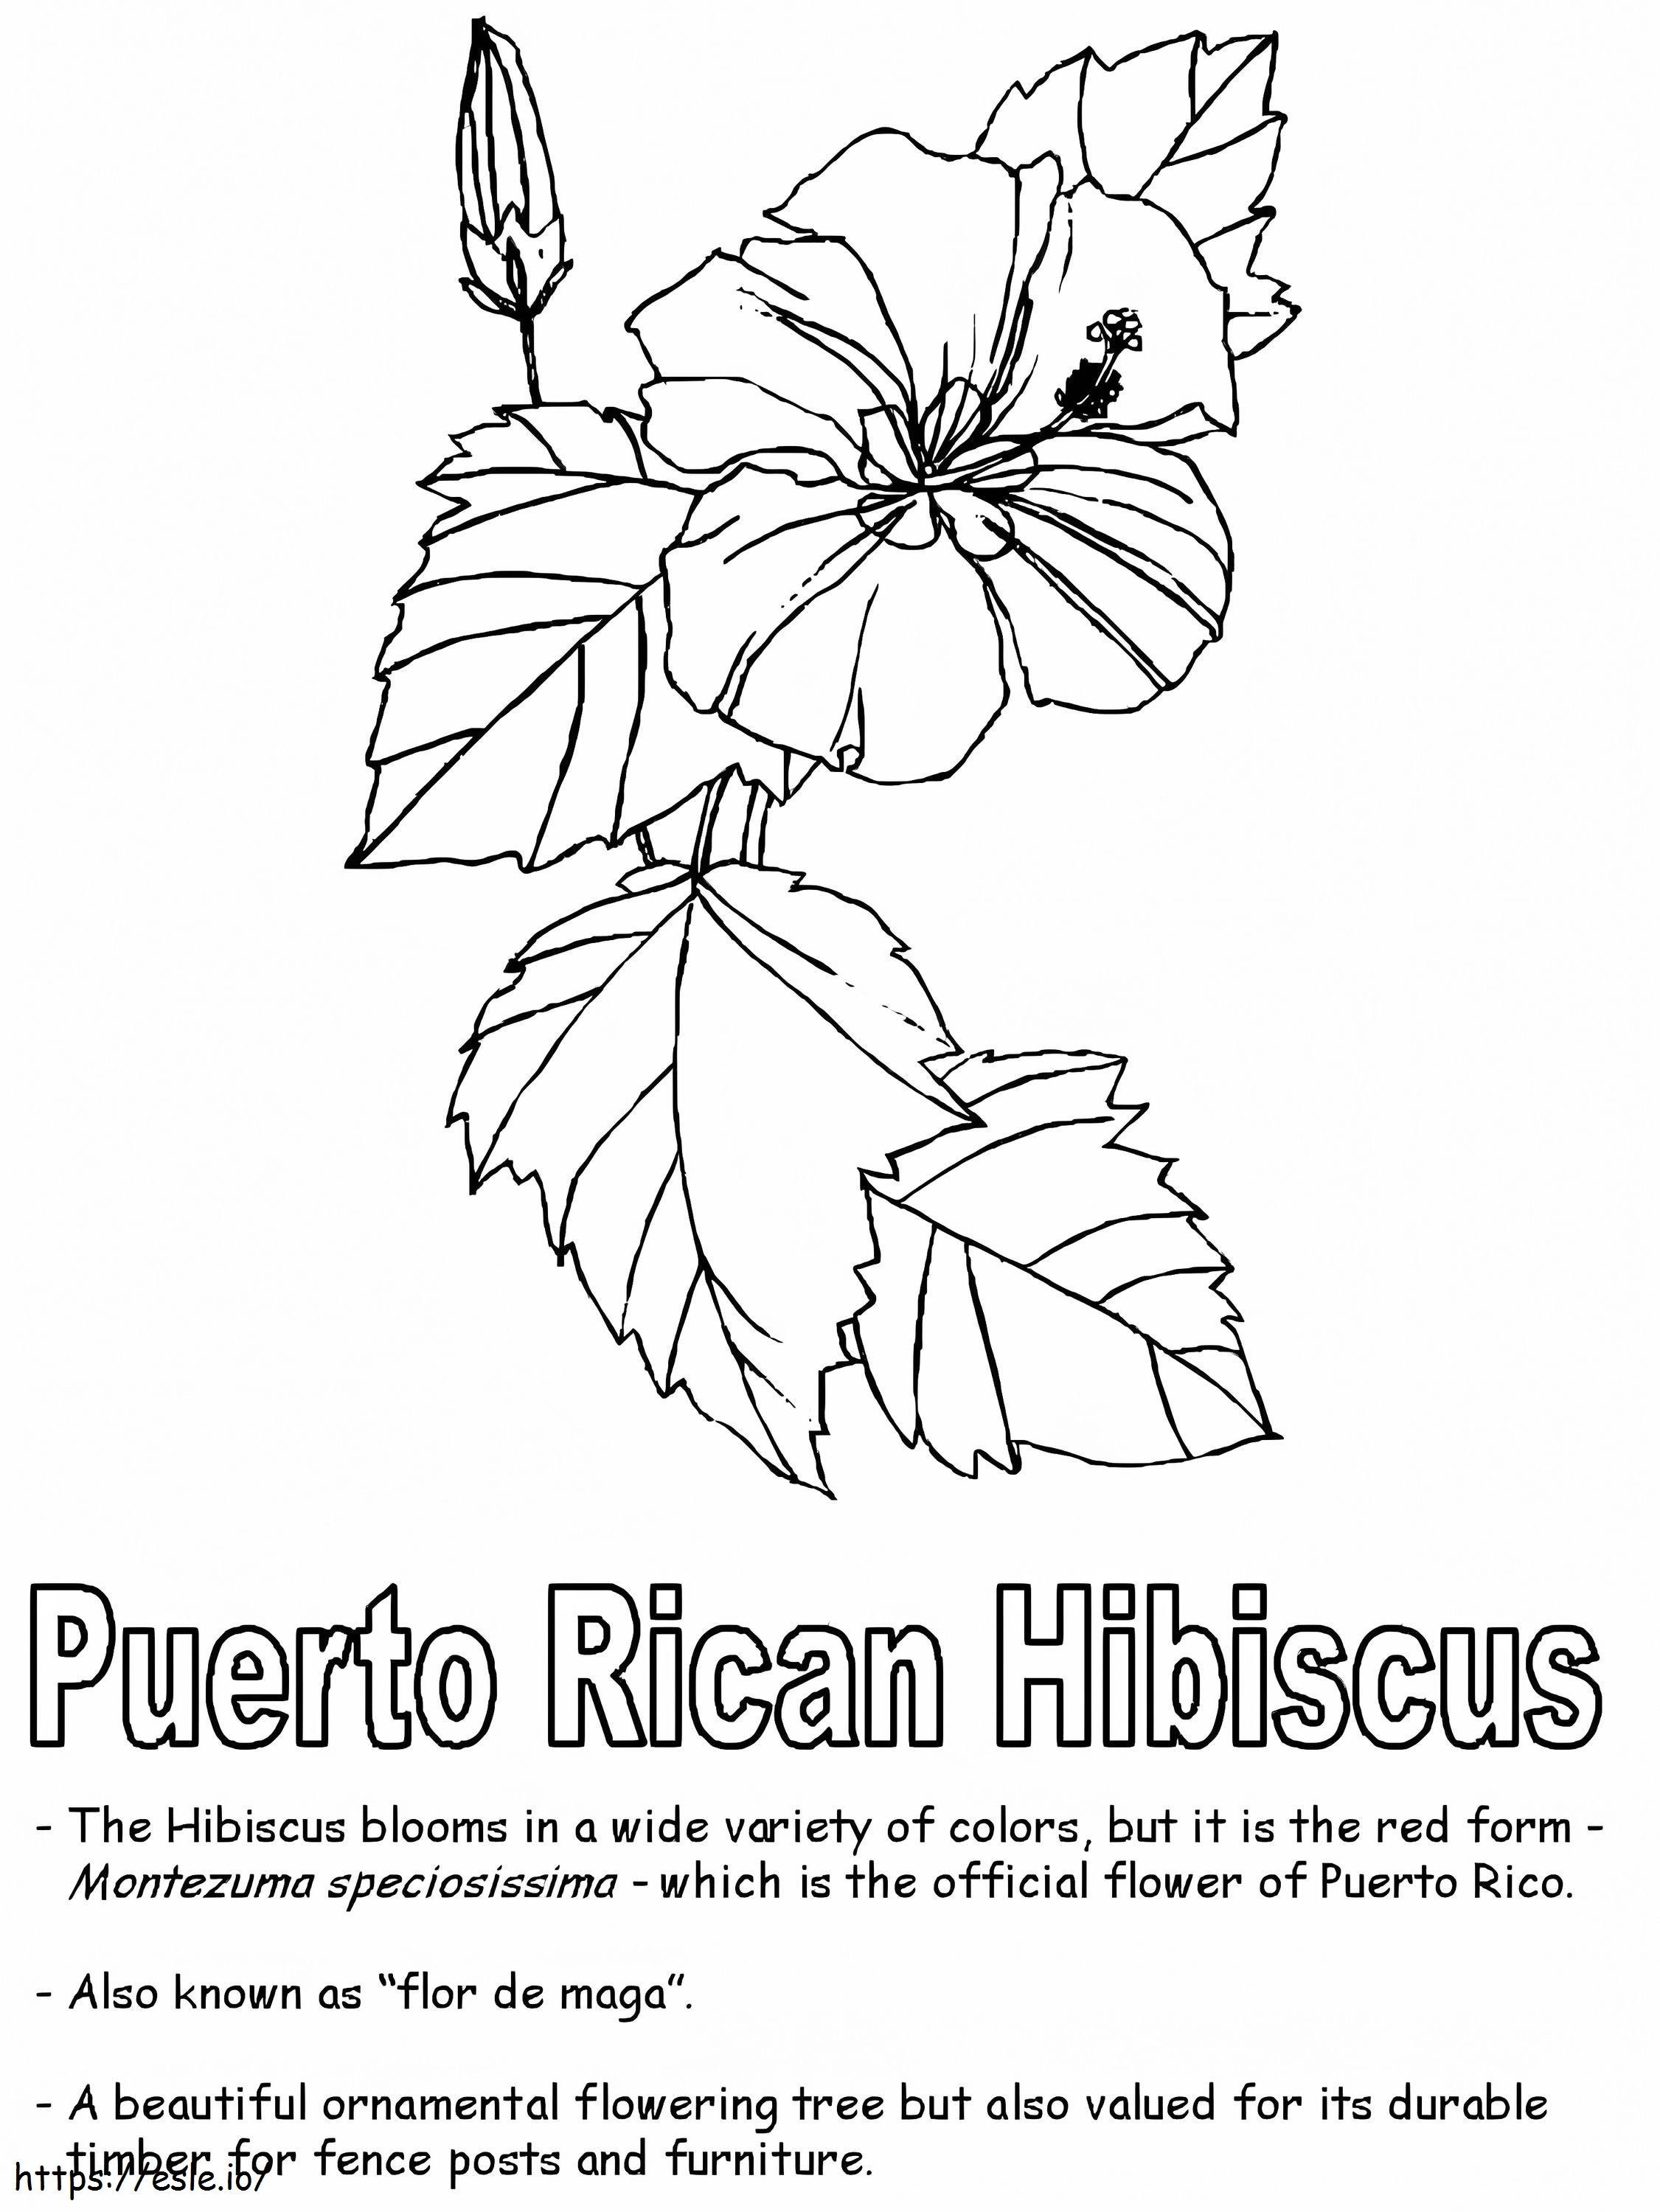 Hibisco puertorriqueño para colorear